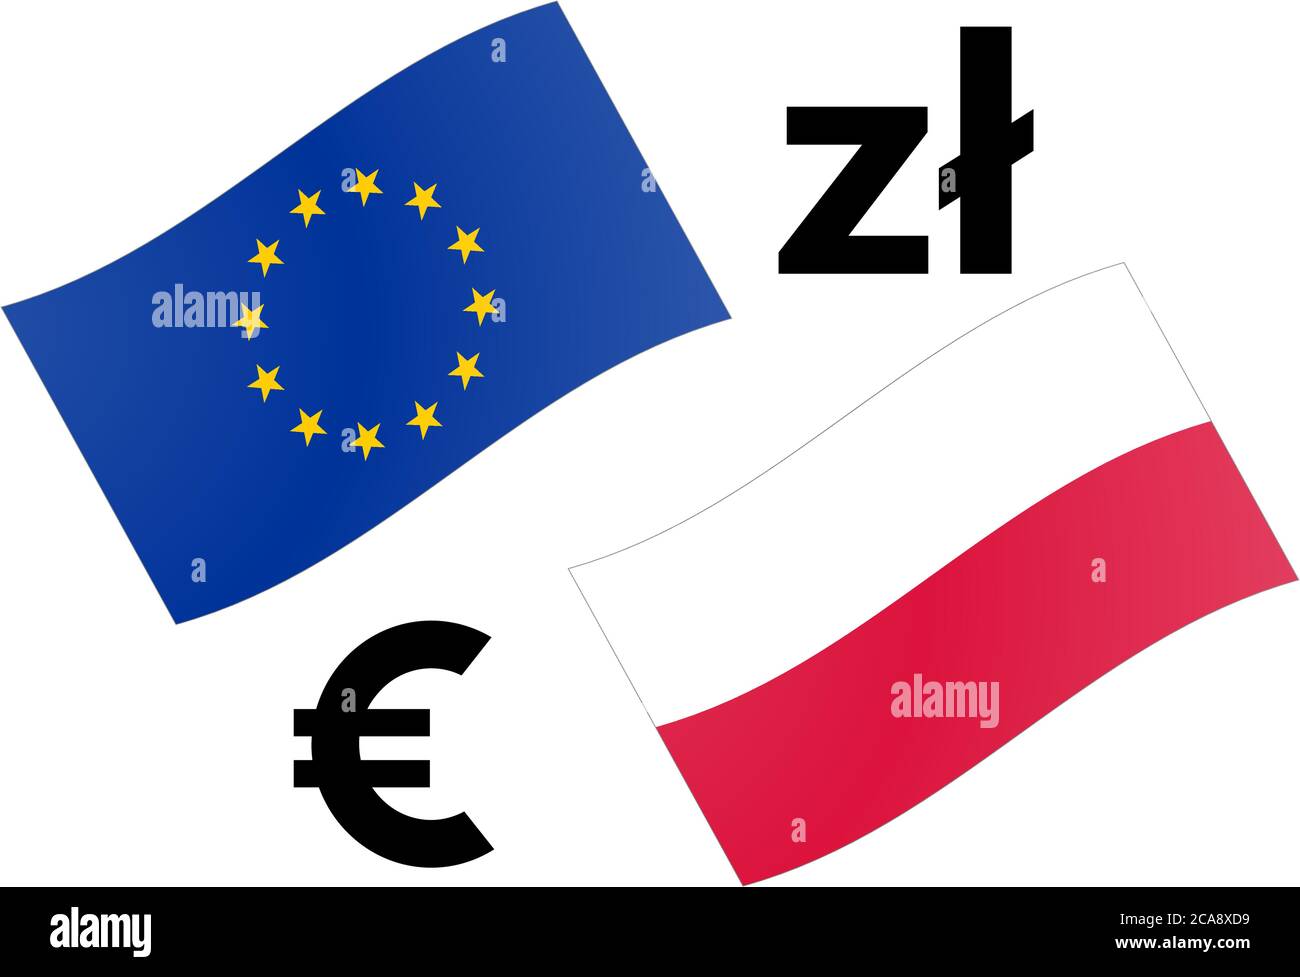 Illustrazione vettoriale coppia di valute forex EURPLN. Bandiera UE e Polonia, con simbolo Euro e Zloty. Illustrazione Vettoriale